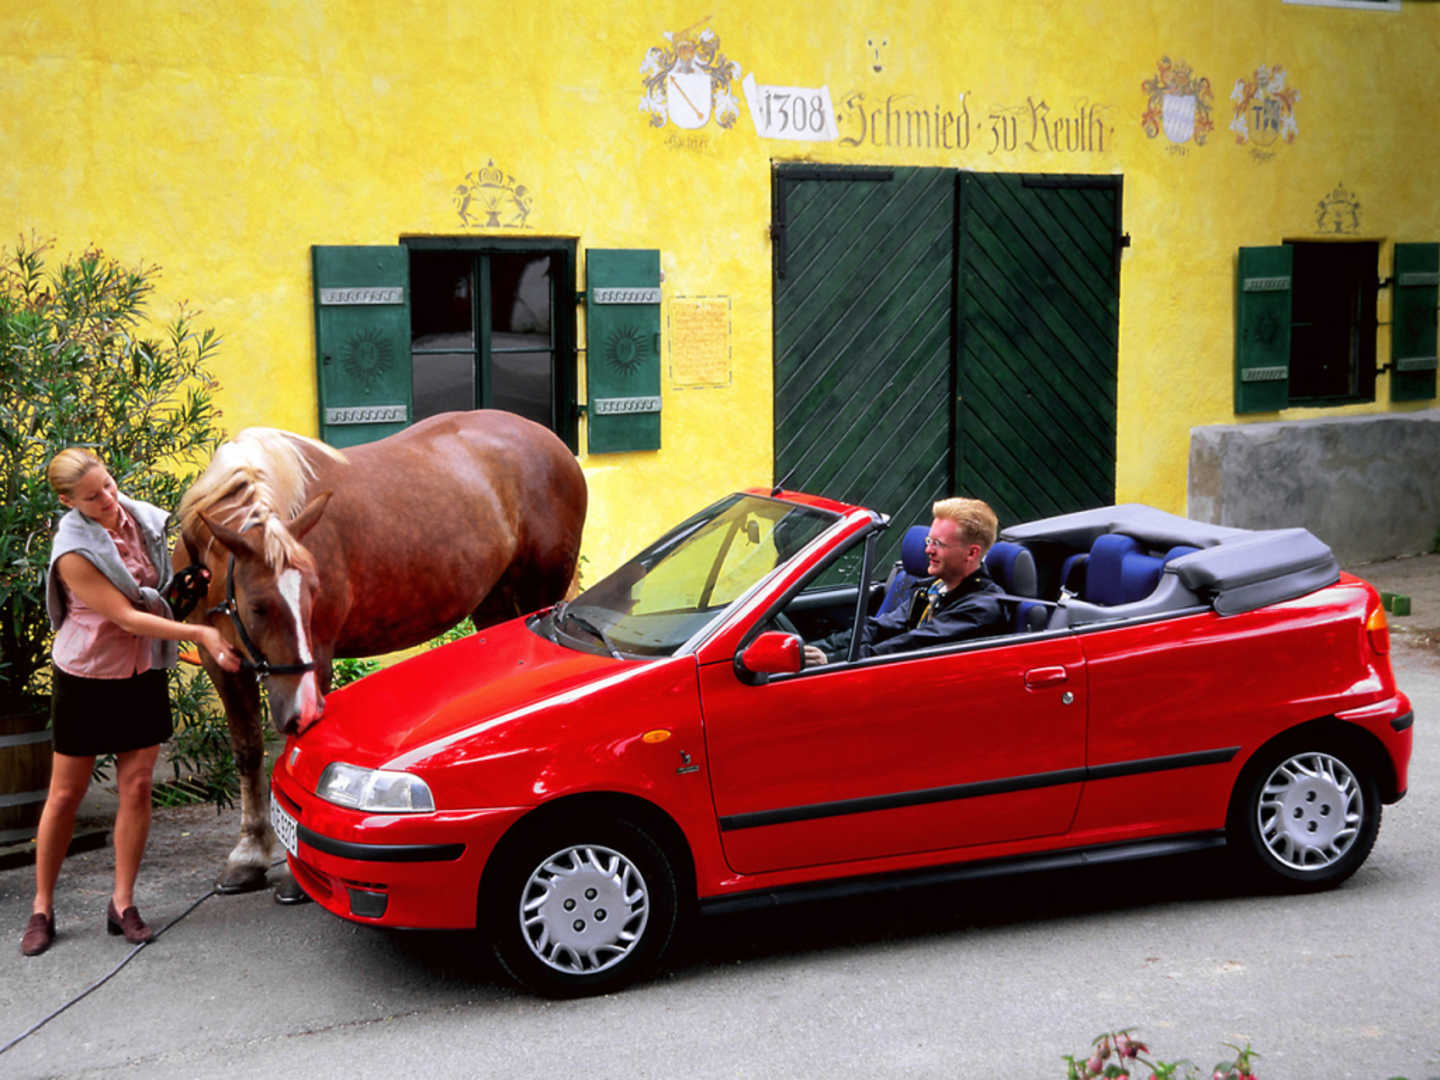 Punto Cabriolet rouge dans la rue, un cheval se tient devant la voiture